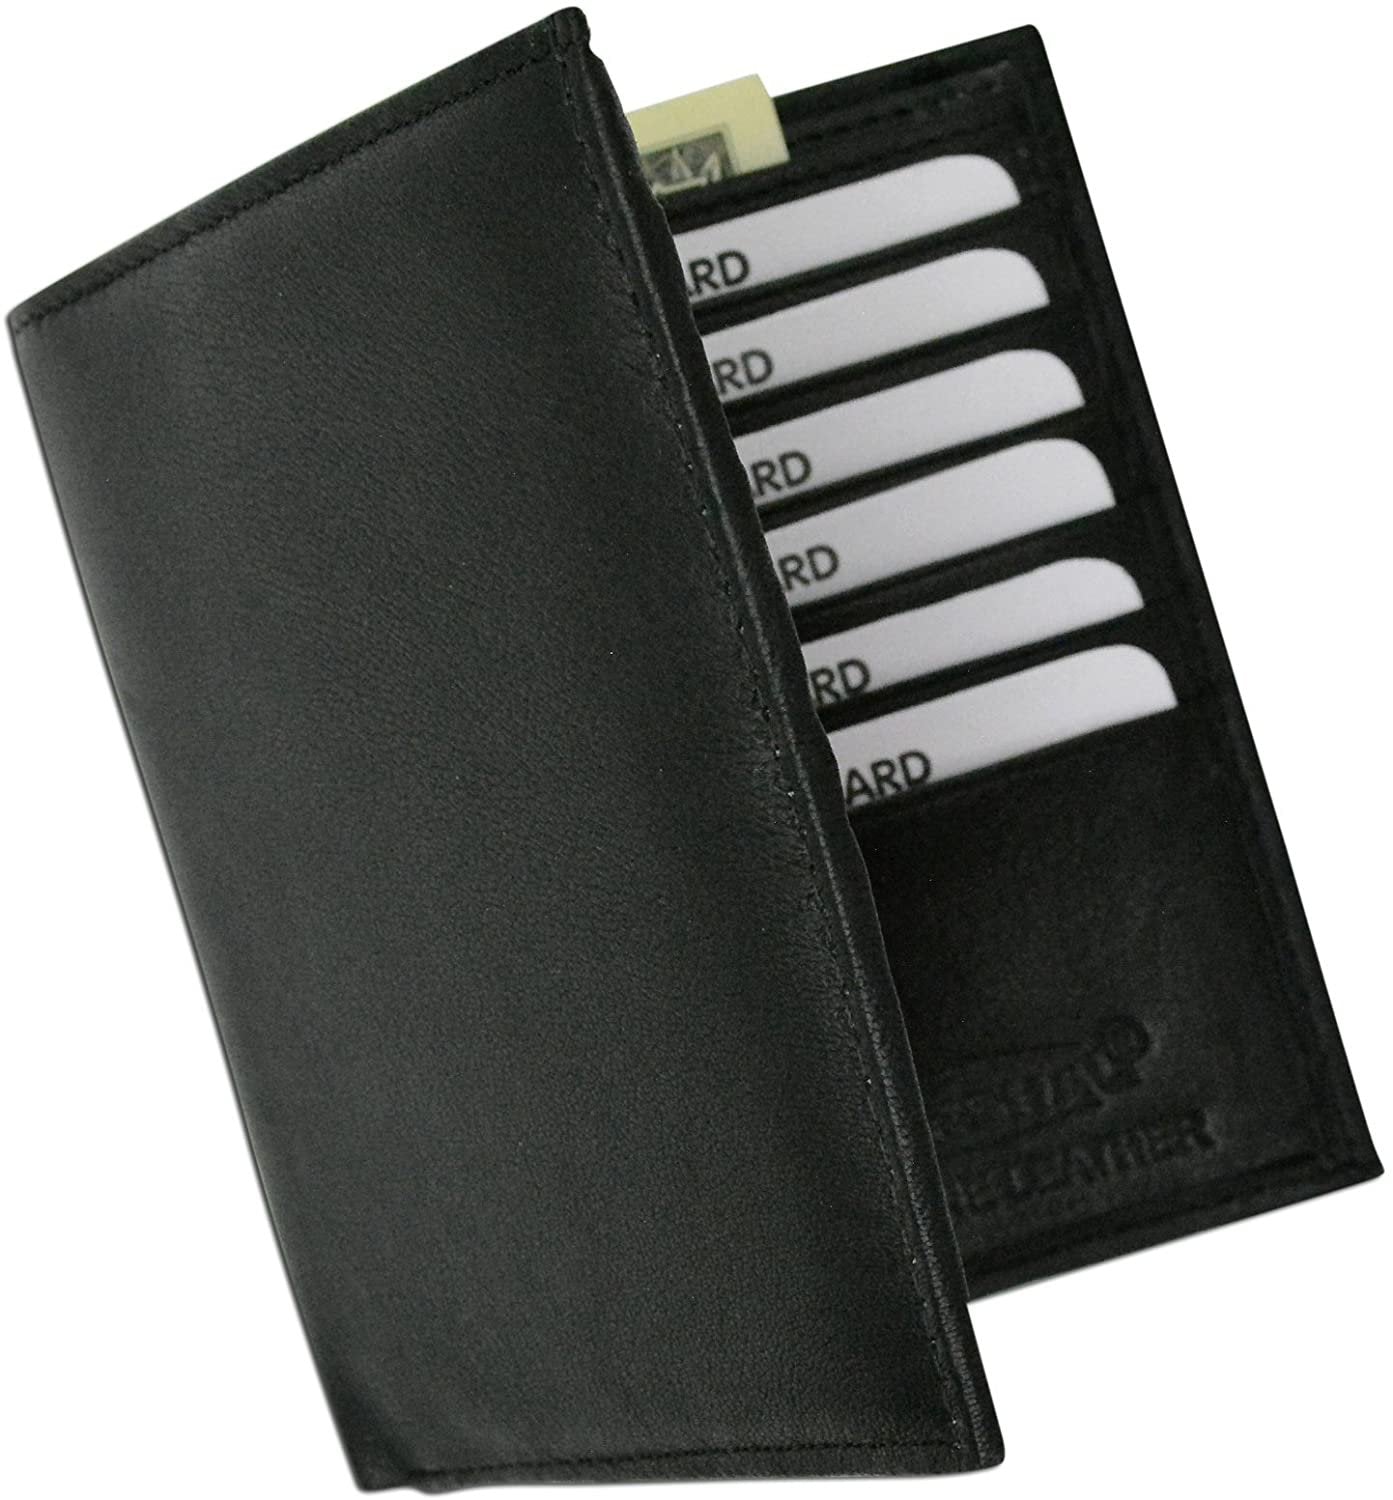 RFID Bifold Credit Card Holder, Black/Cobalt